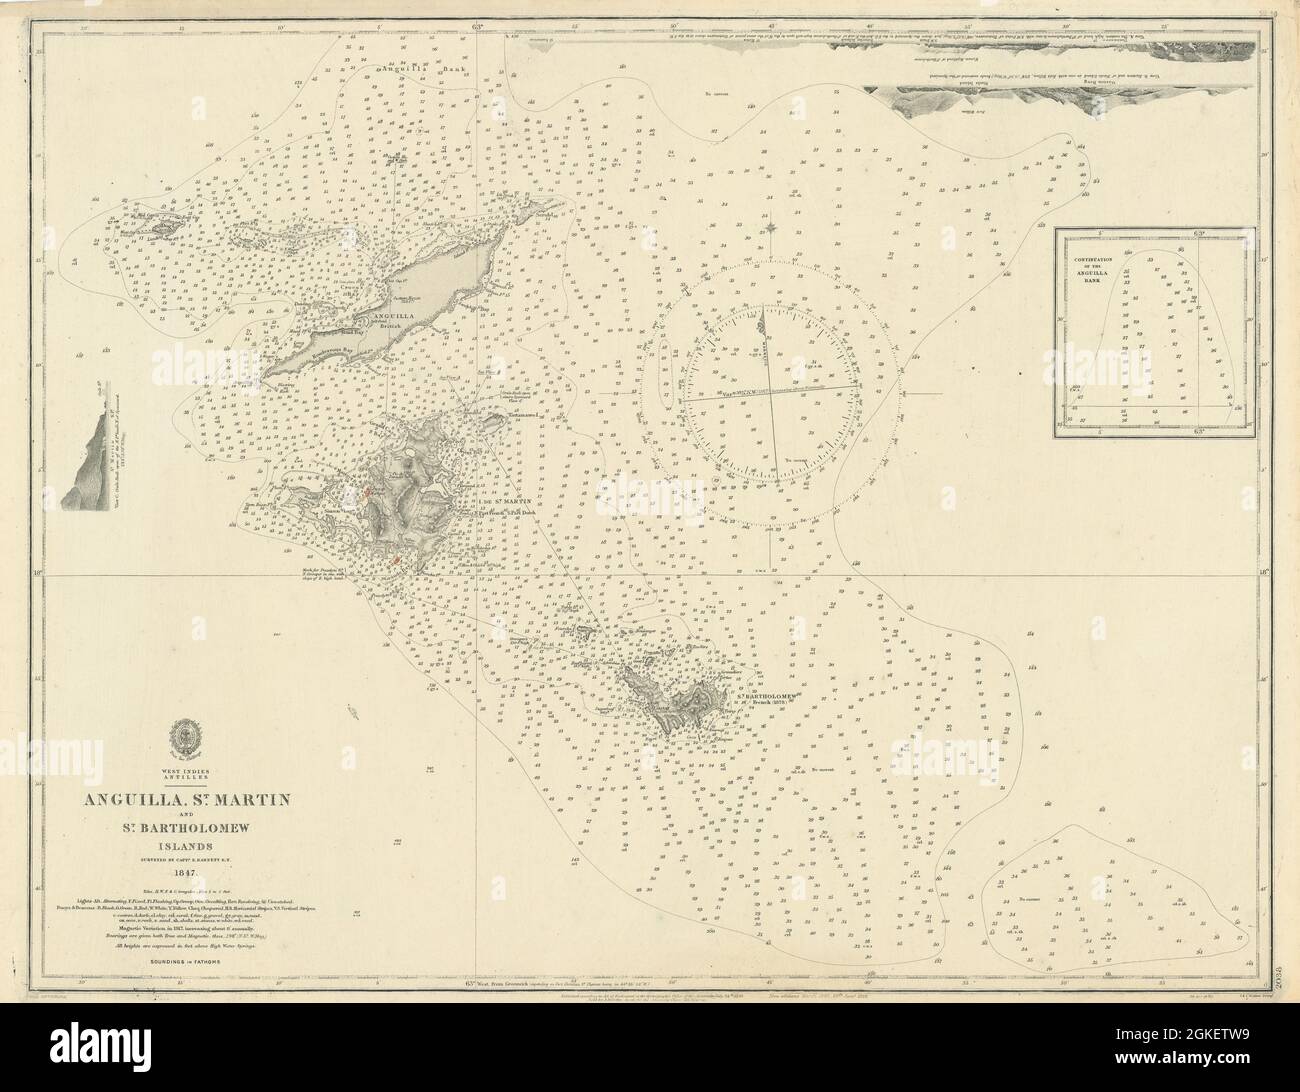 Antille Anguilla St Martin Isole Bartolomeo grafico 1850 (1918) mappa Foto Stock